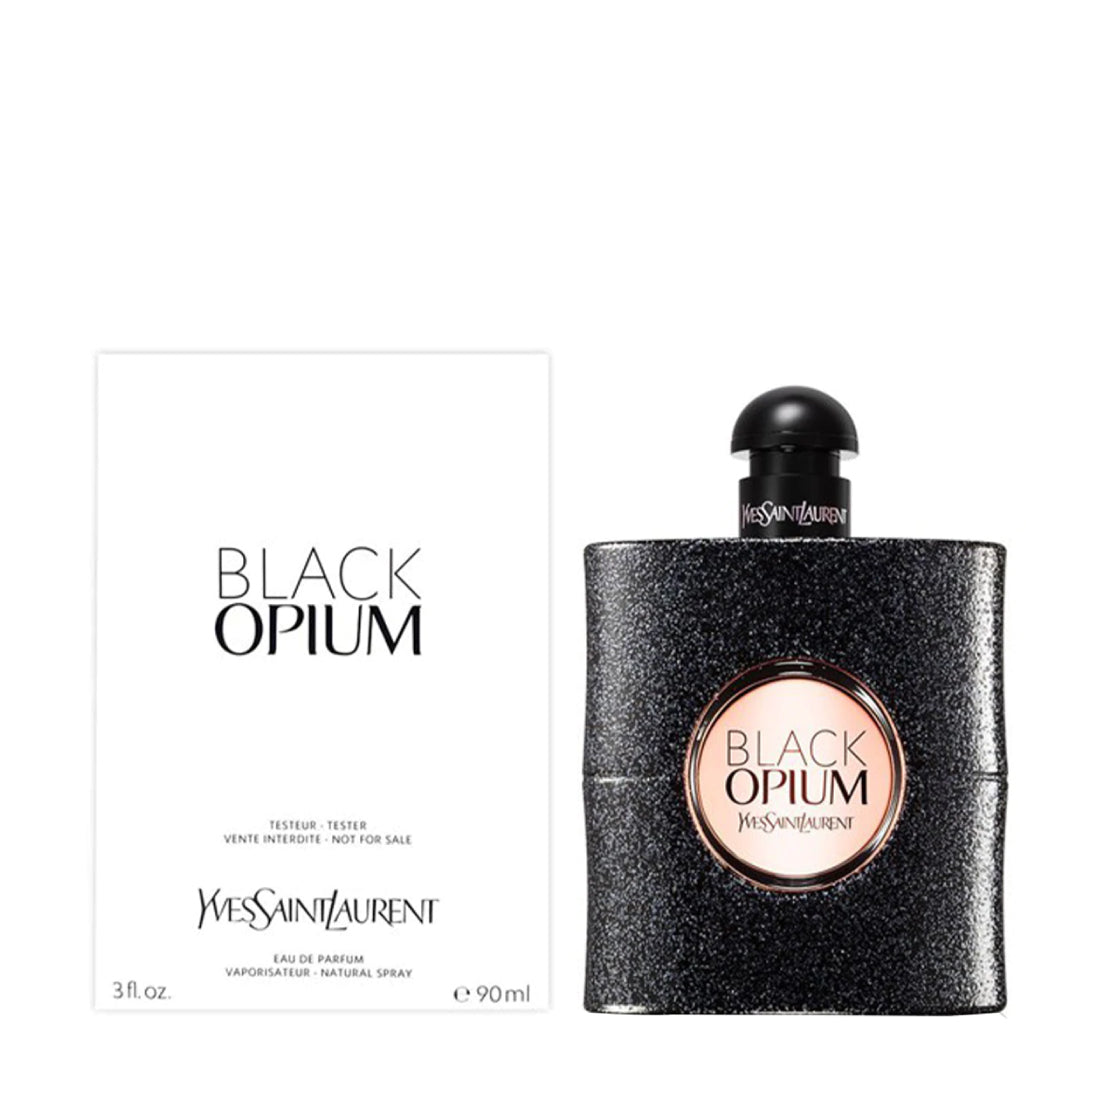 NEW* Black Opium LE PARFUM ☕️ Review 